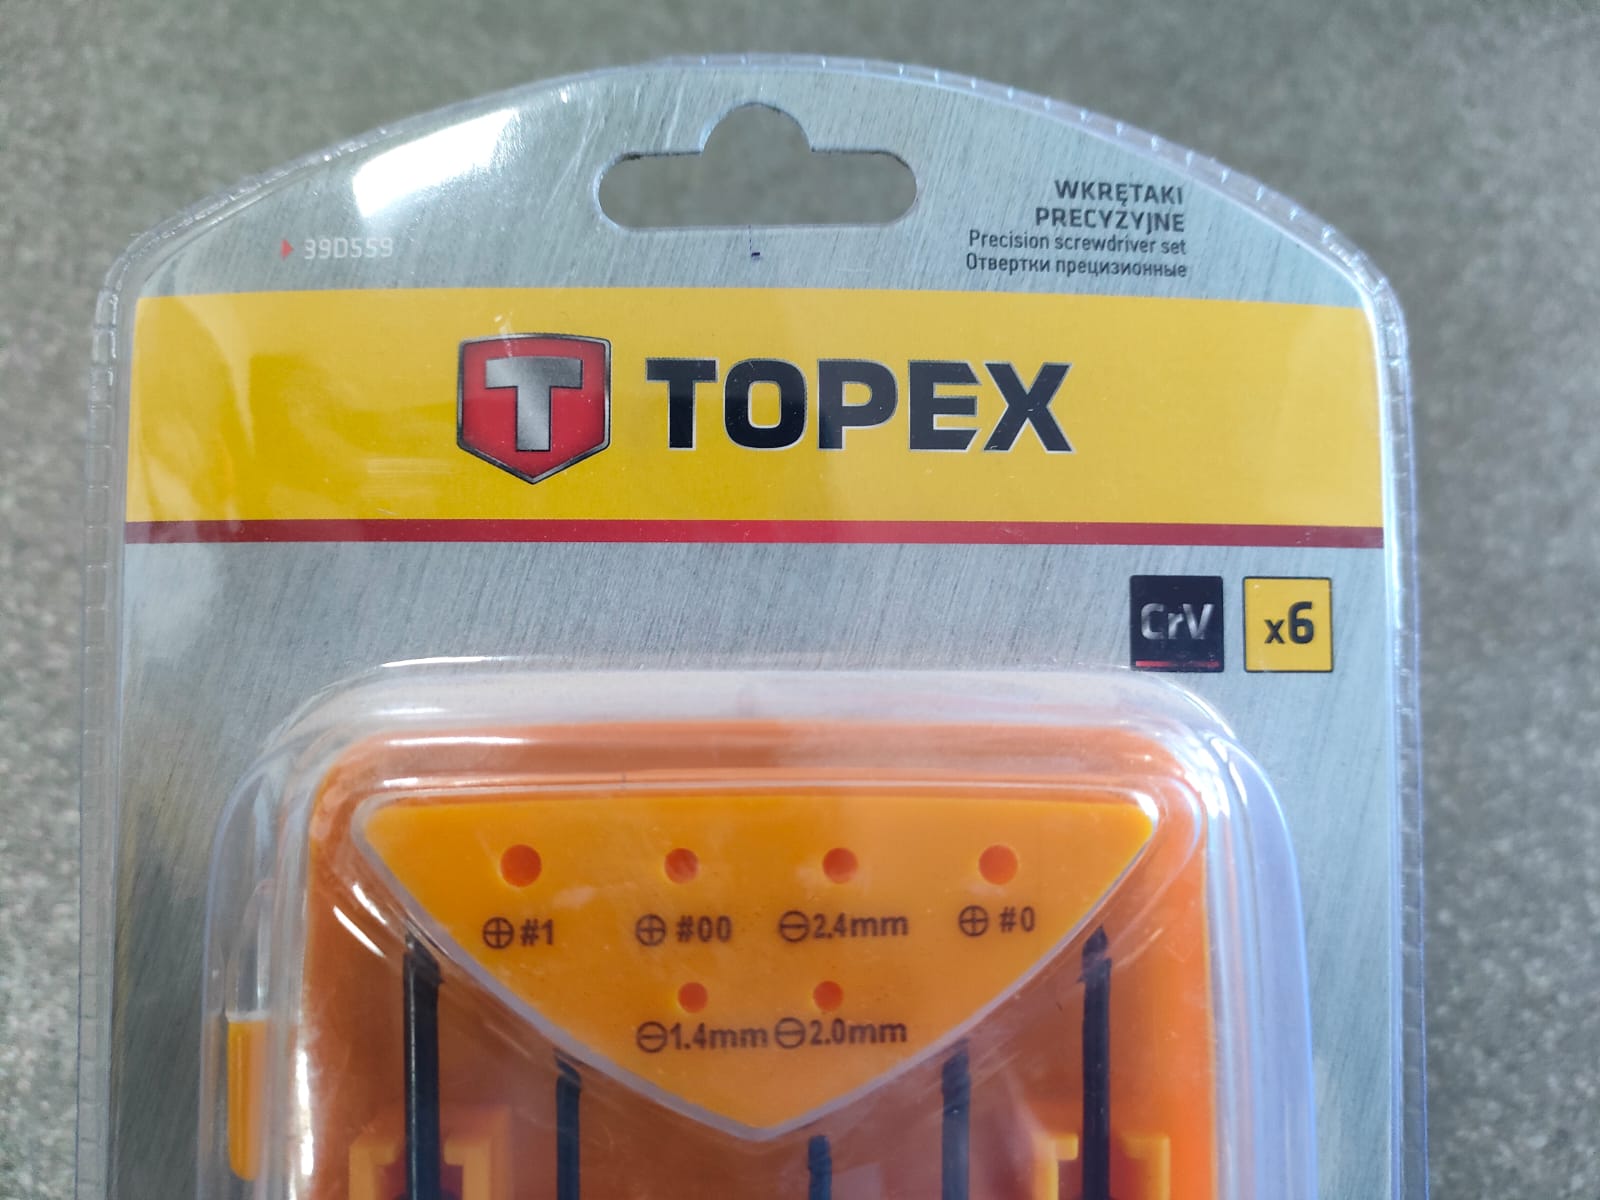 Отвертки TOPEX (Топекс) прецизионные набор 6 штук (39D559)